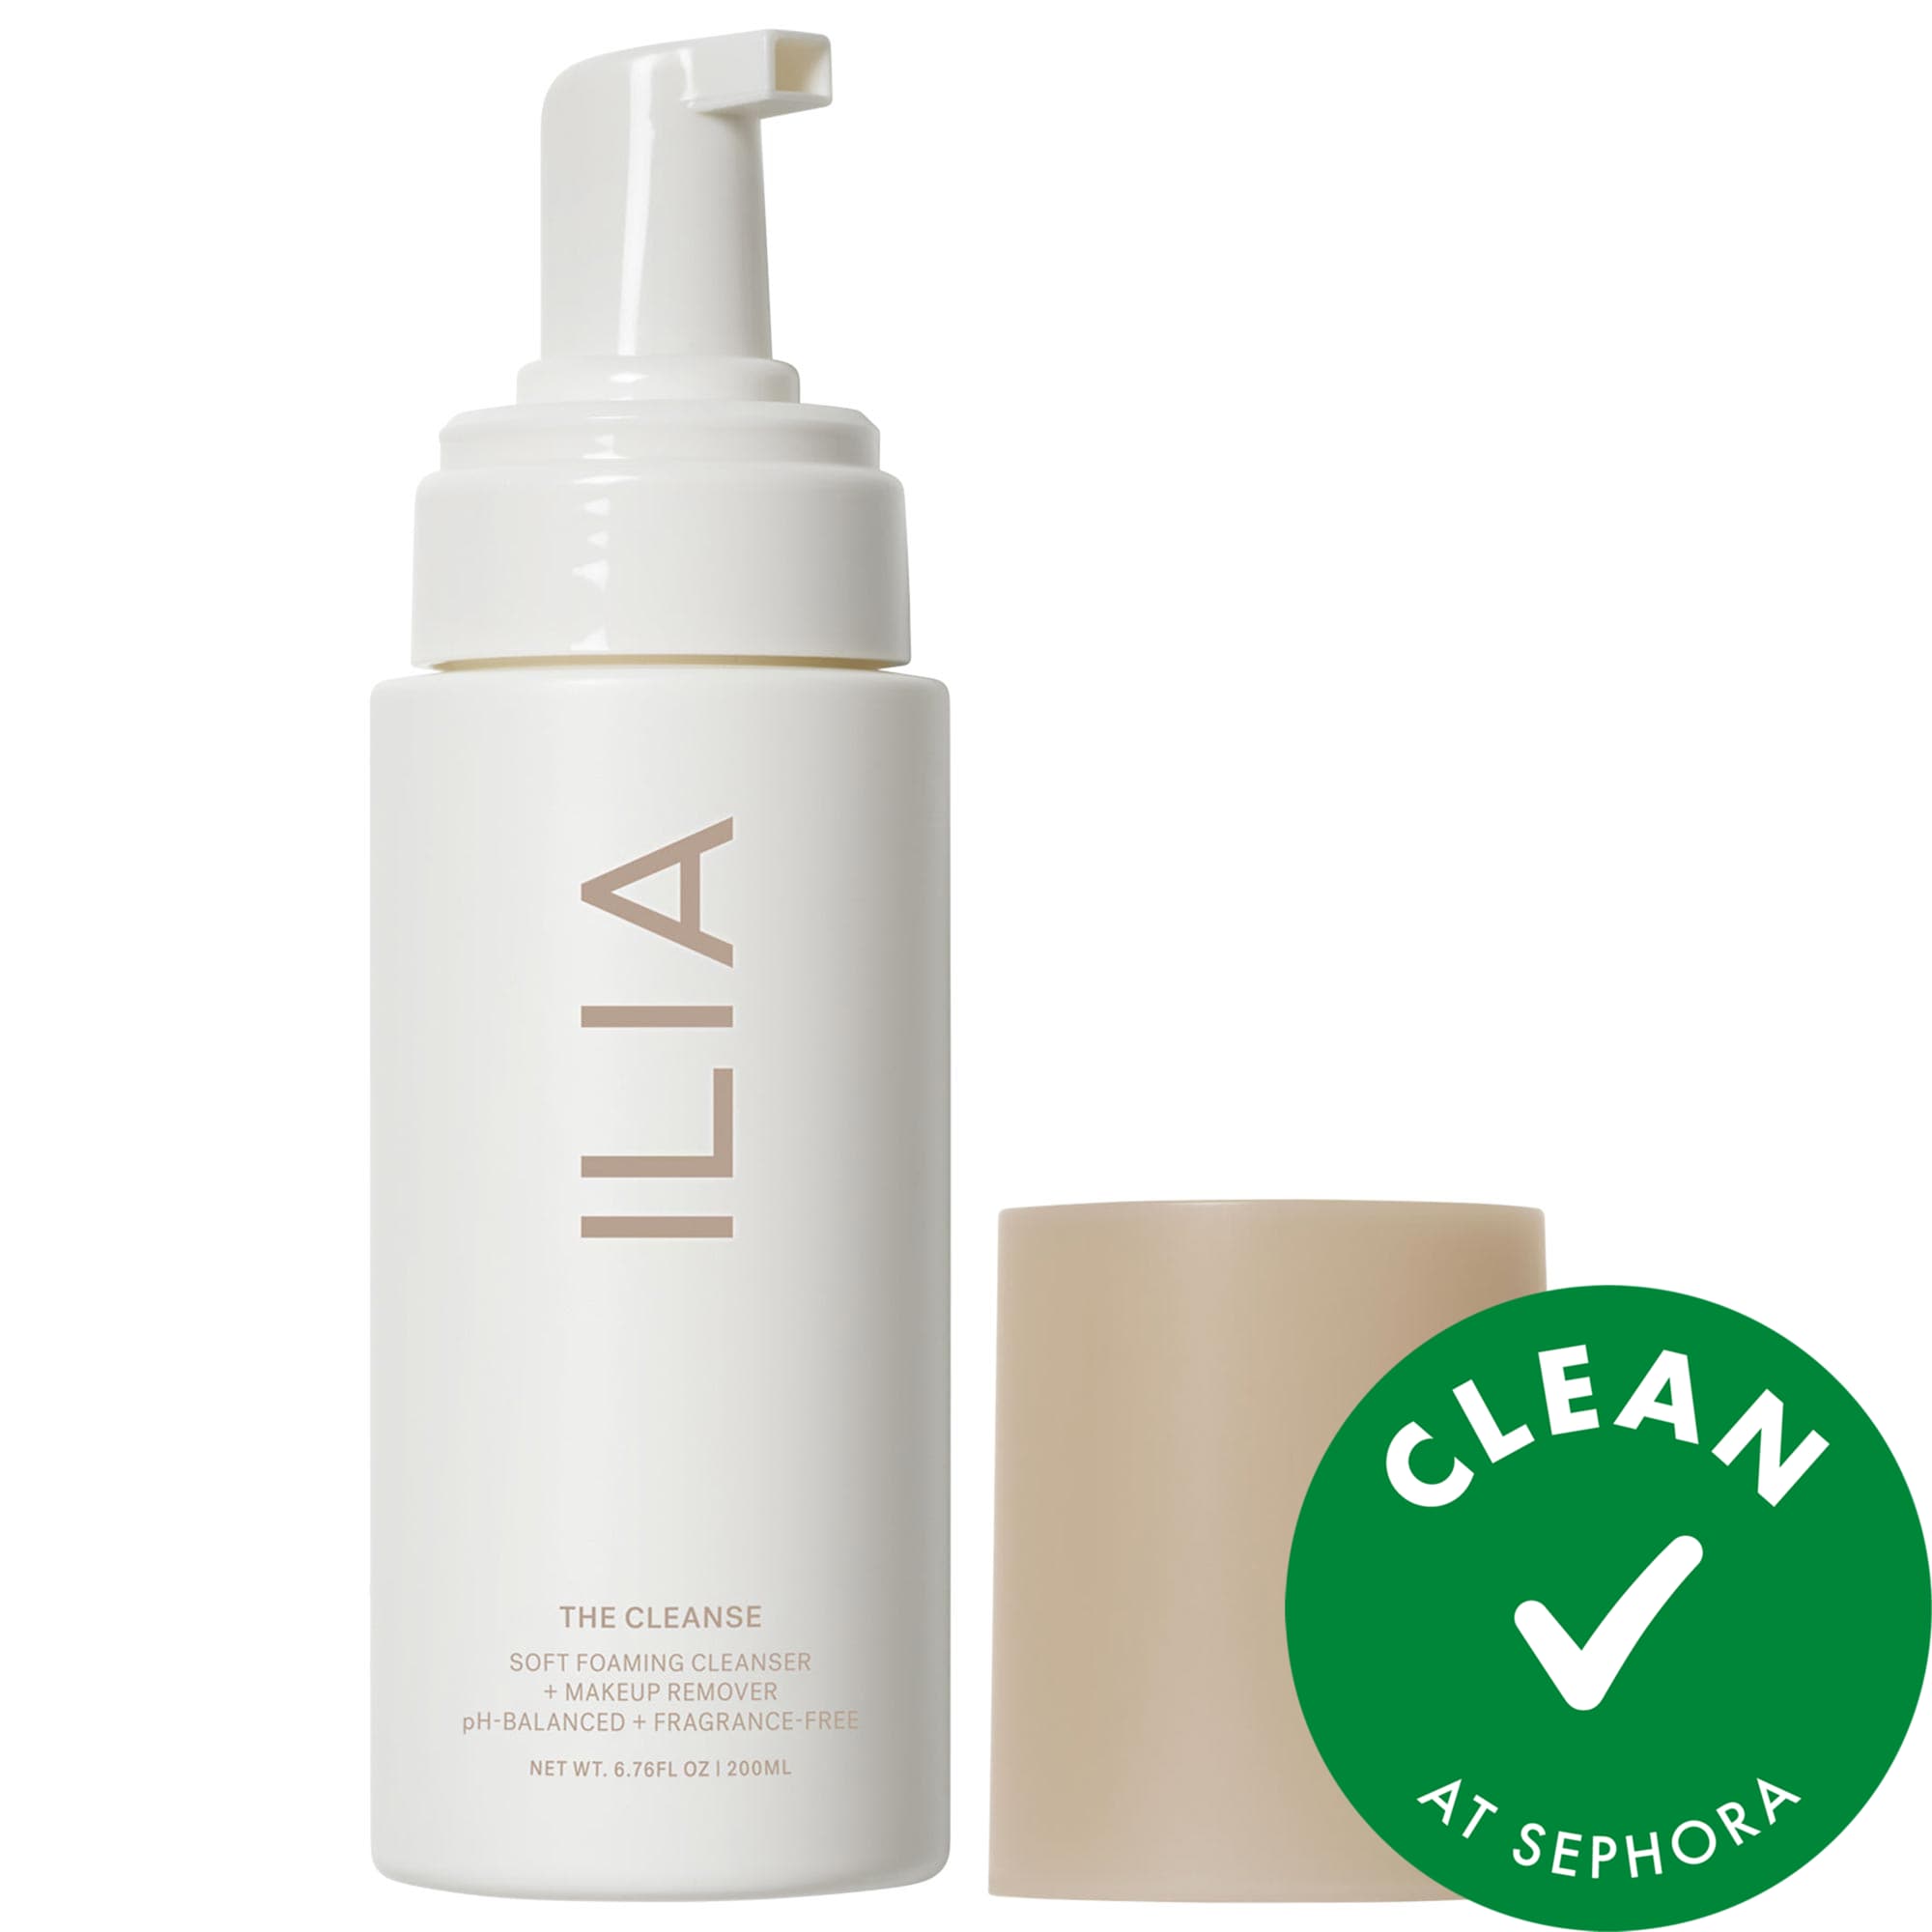 The Cleanse Мягкая очищающая пенка + средство для снятия макияжа ILIA